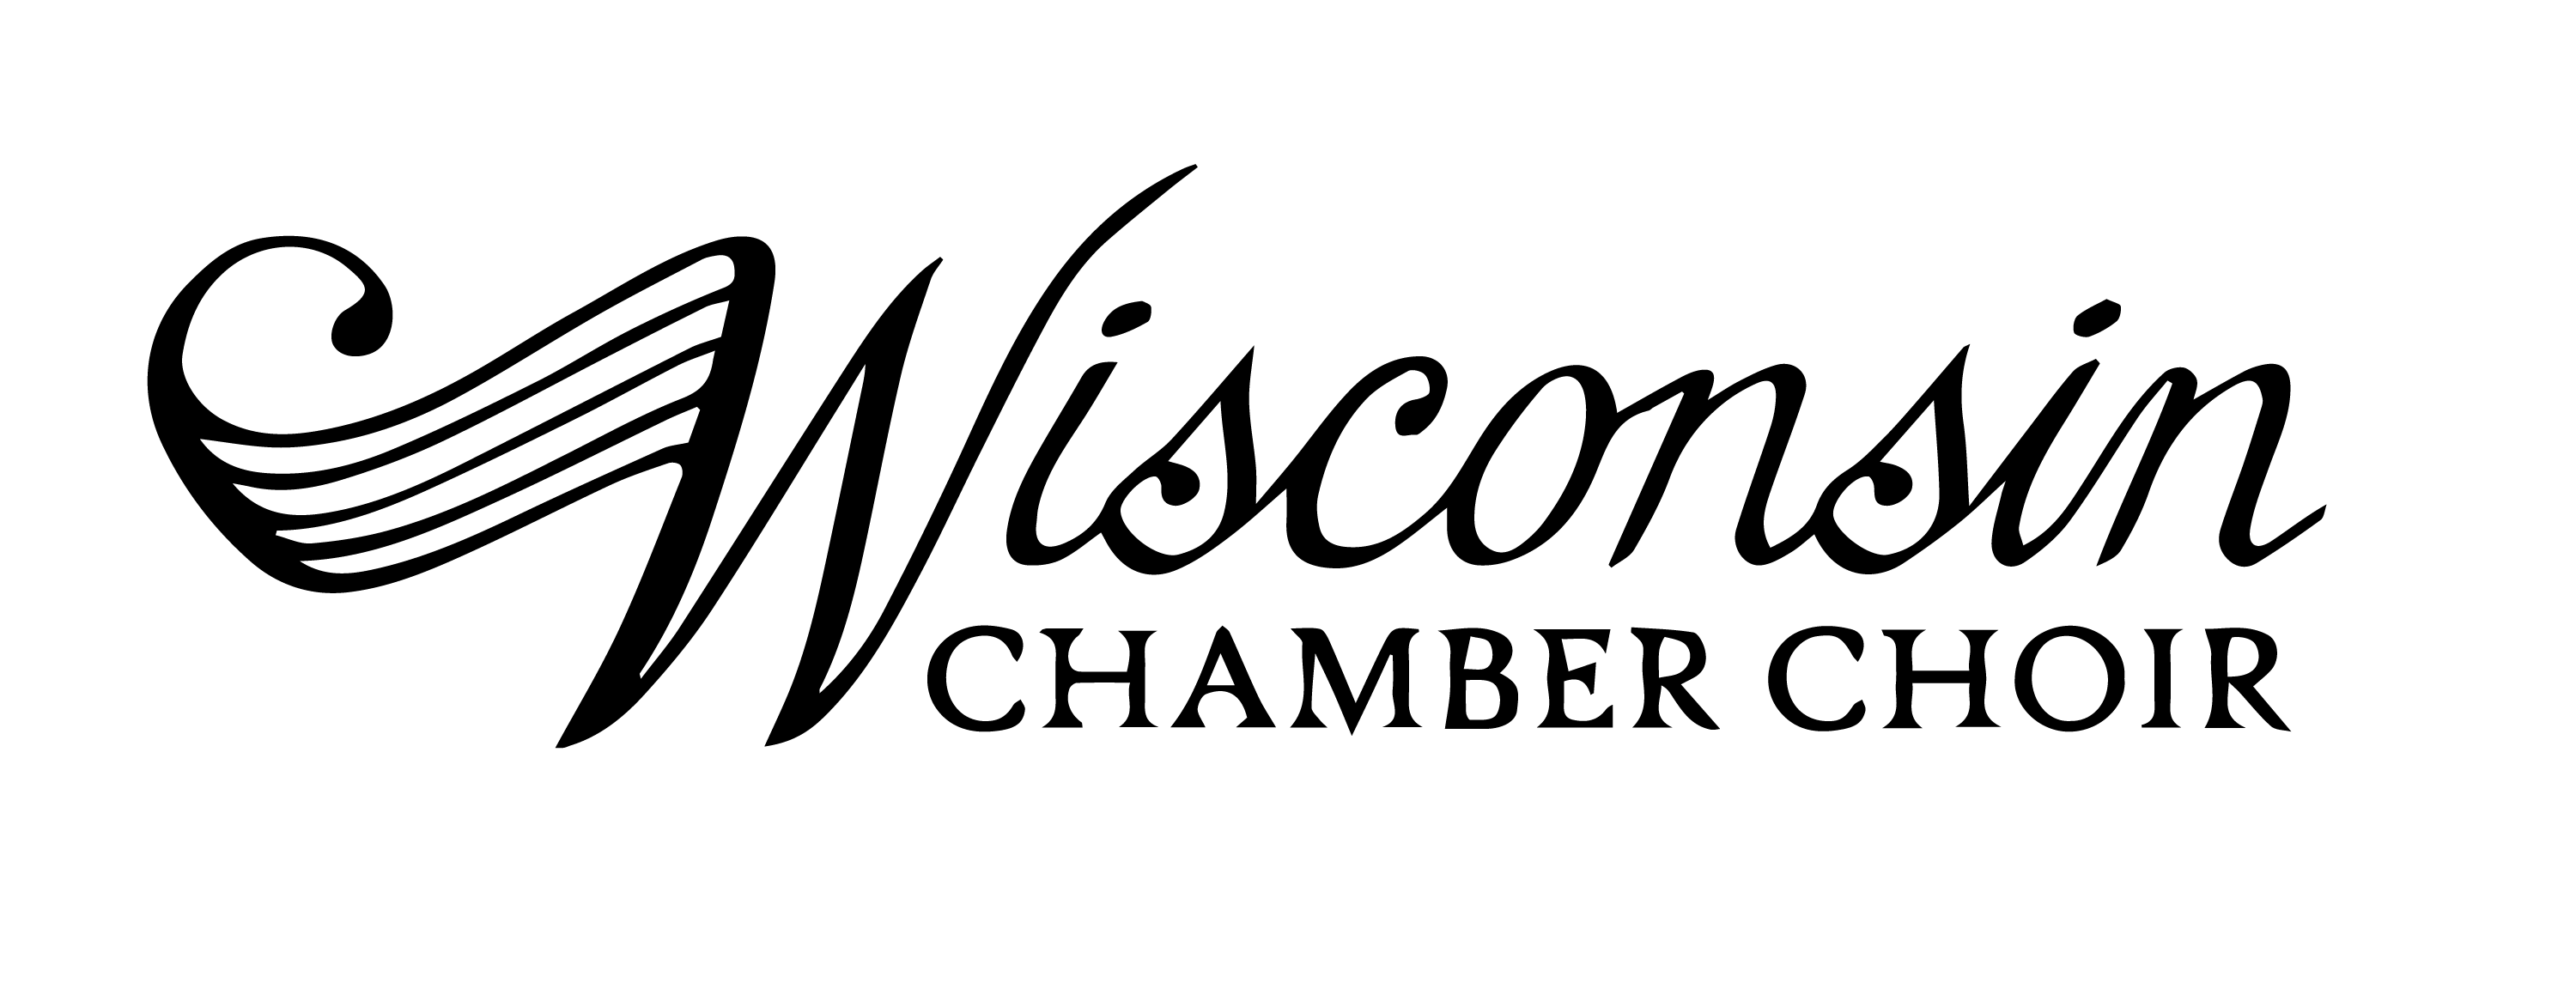 Wisconsin Chamber Choir